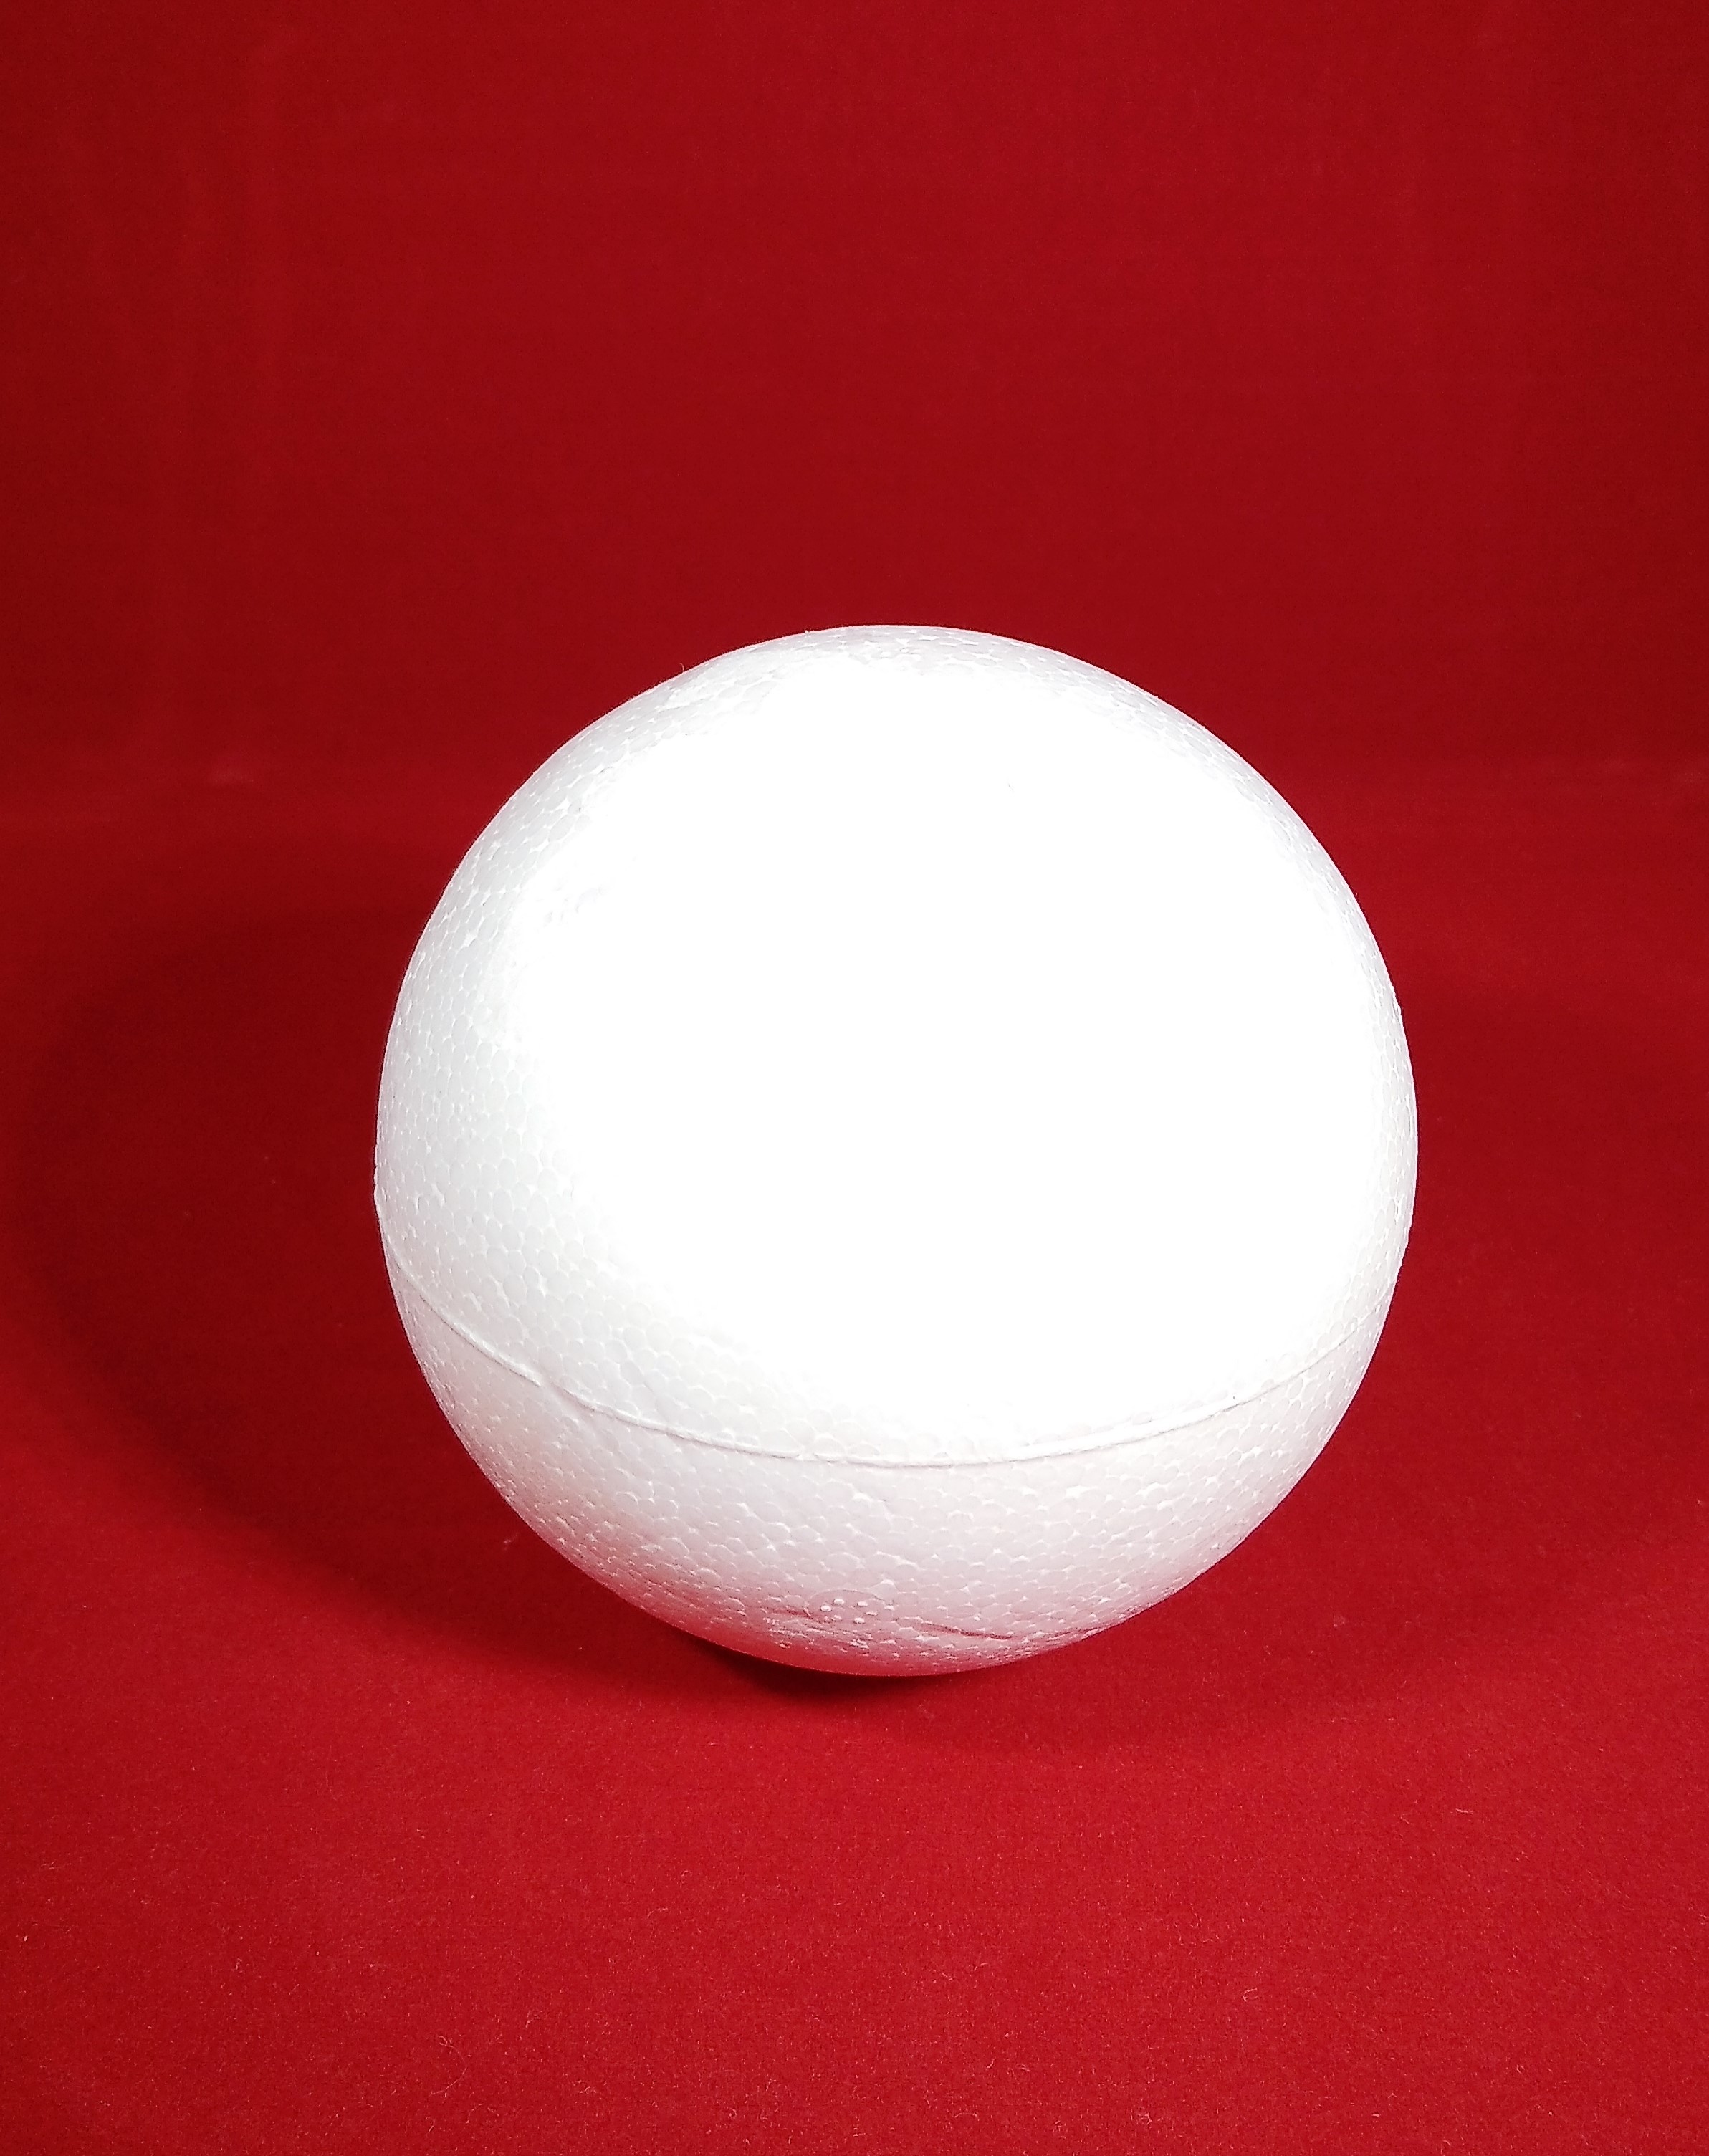 Polystyrenová koule, průměr 8 cm